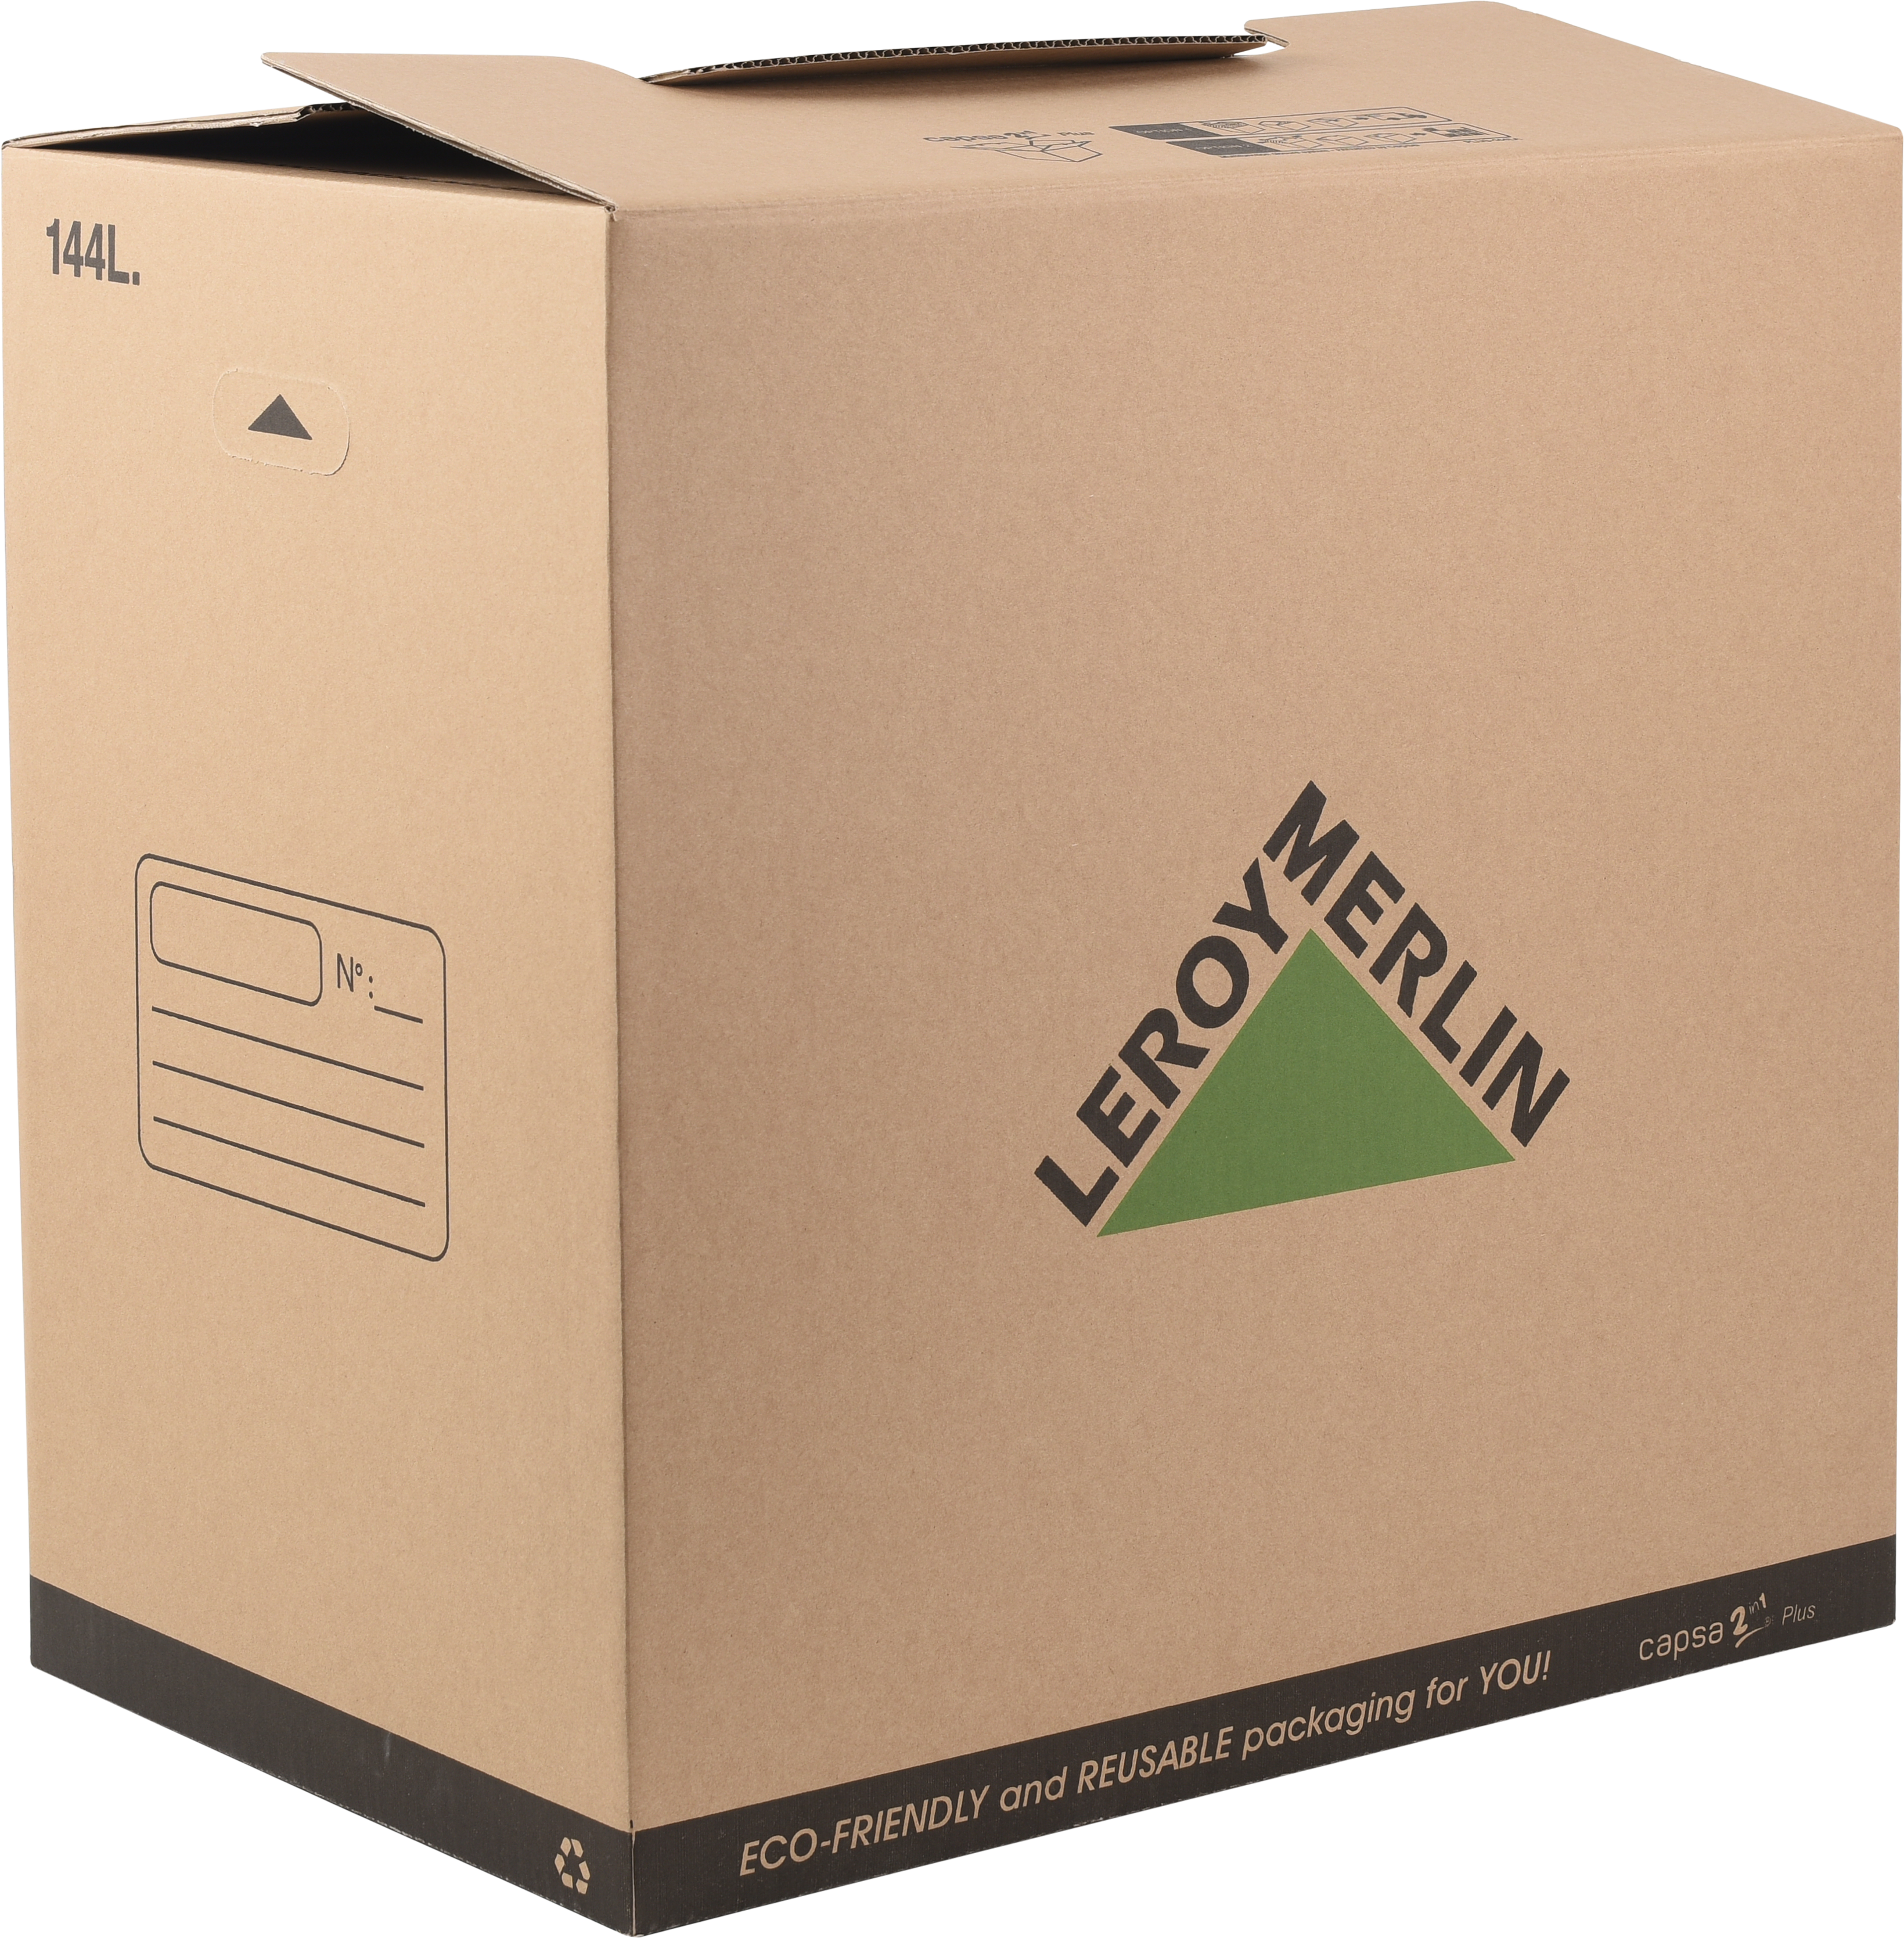 Caja mudanza de 144 l de 60x40x60 cm y carga máx. 40 kg | Leroy Merlin